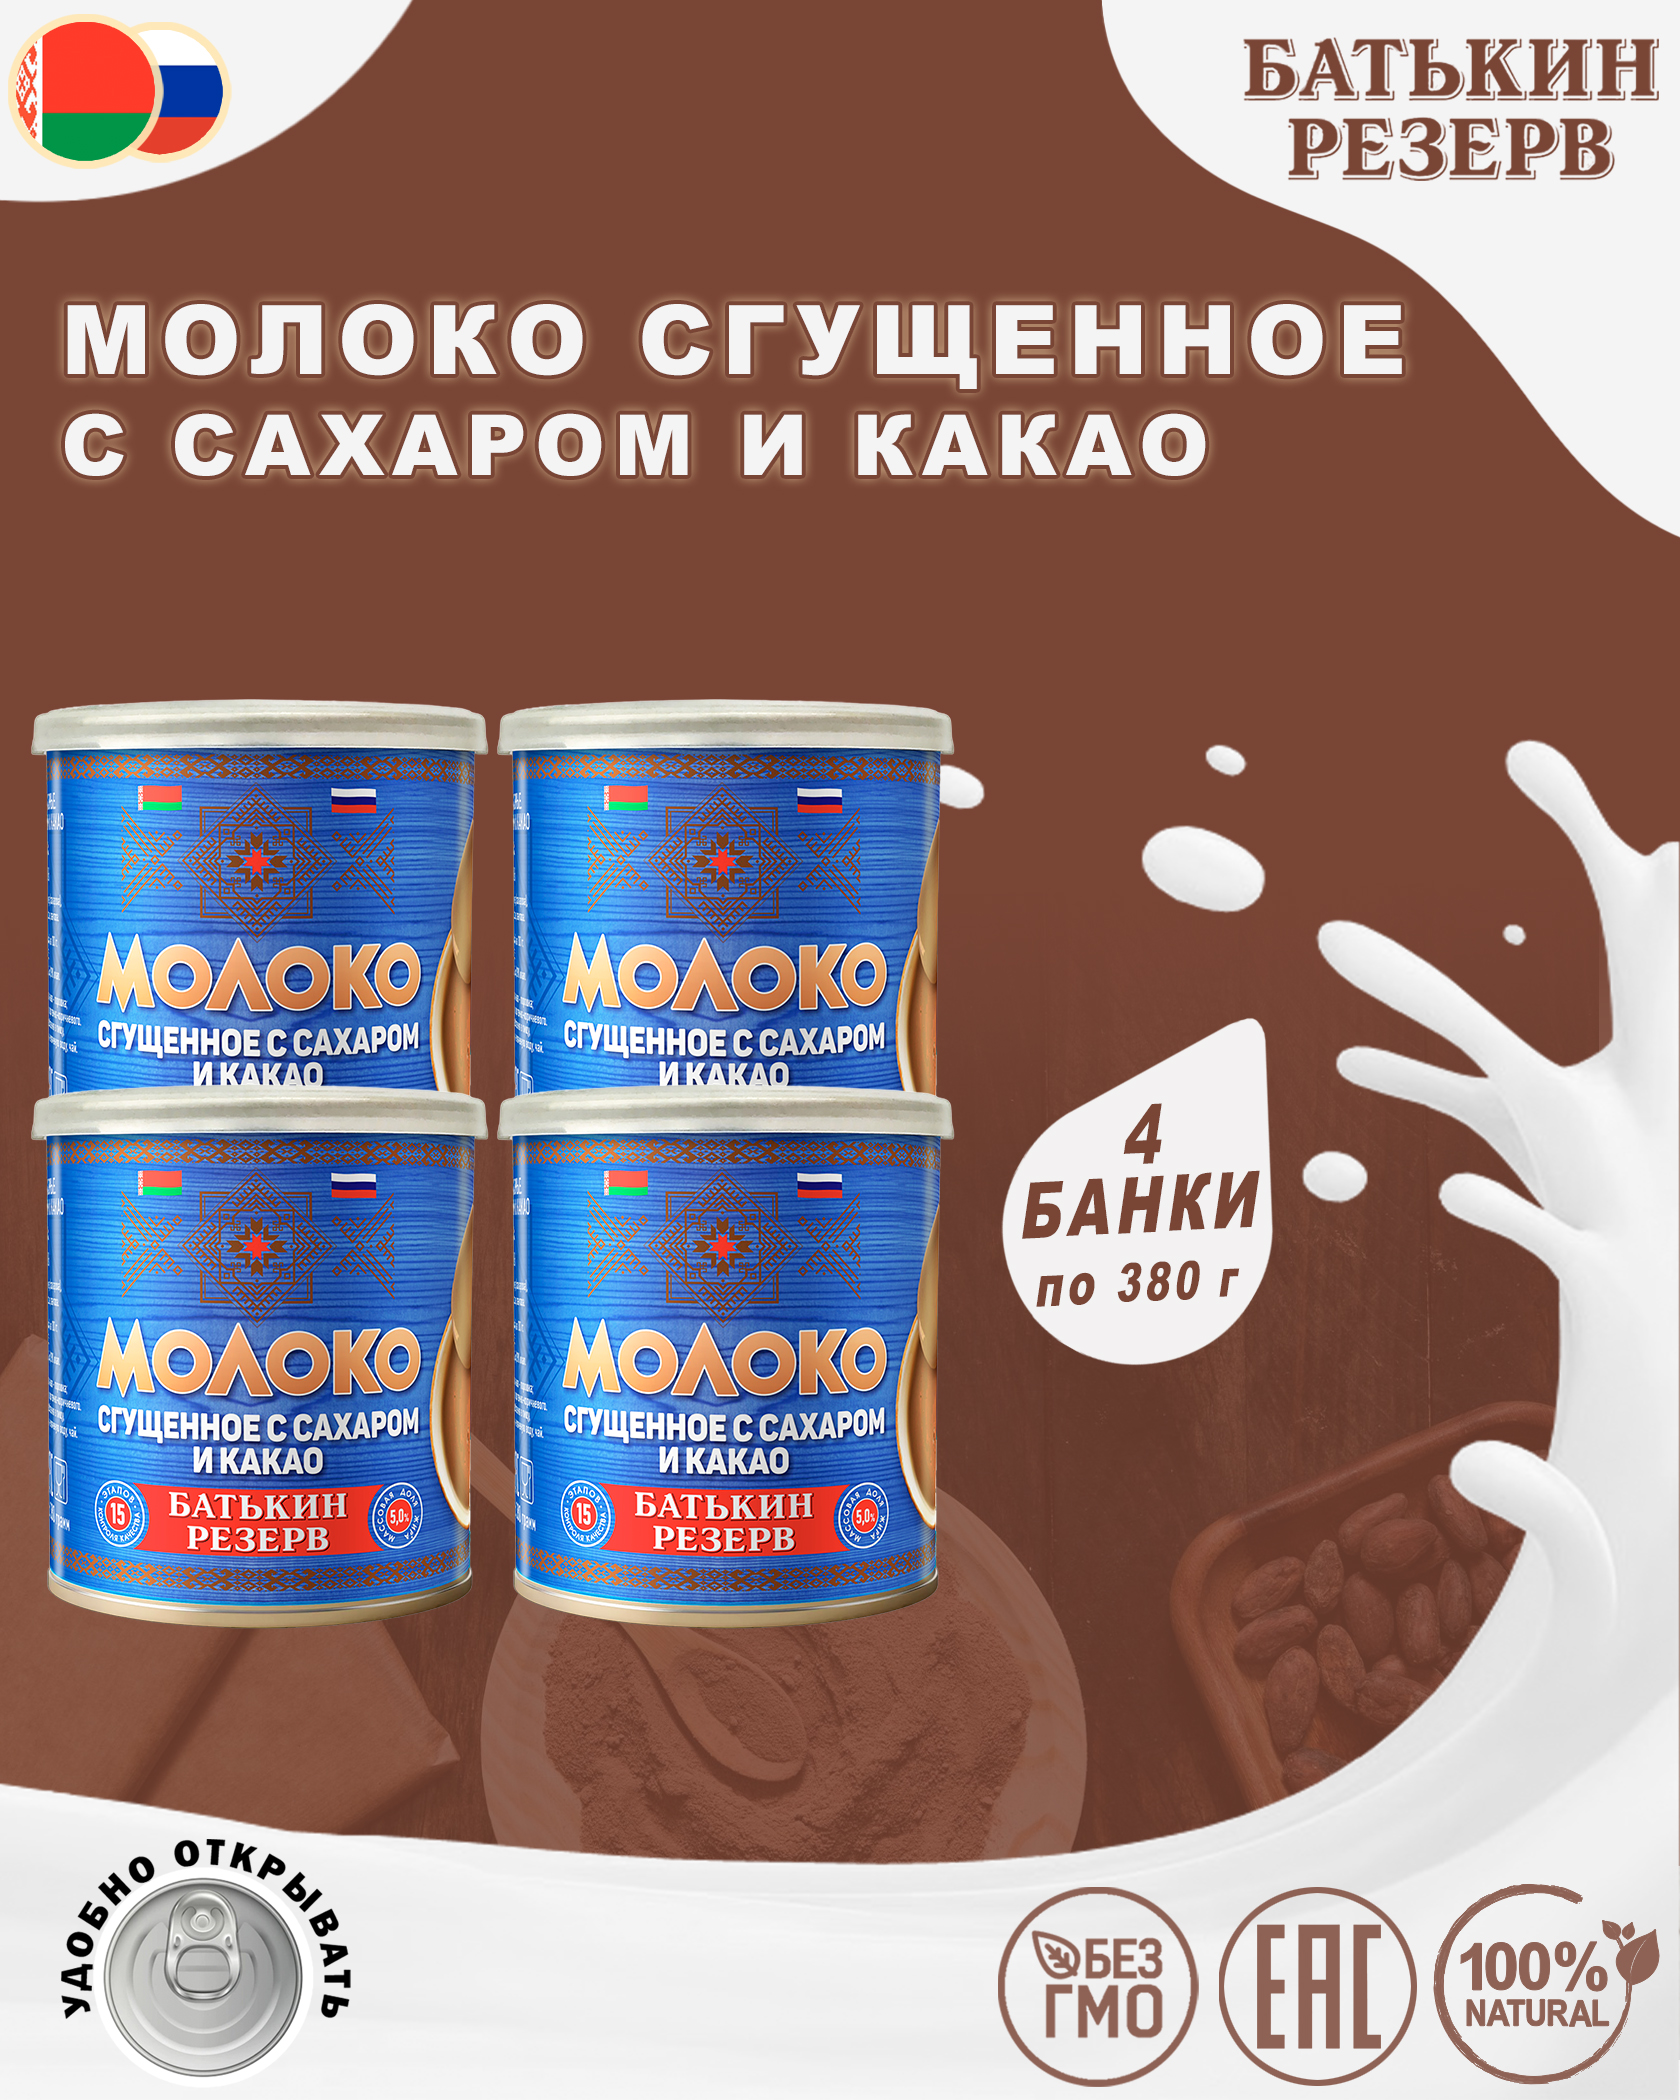 Молоко сгущенное с сахаром и какао, Батькин резерв, 4 шт. по 380 г